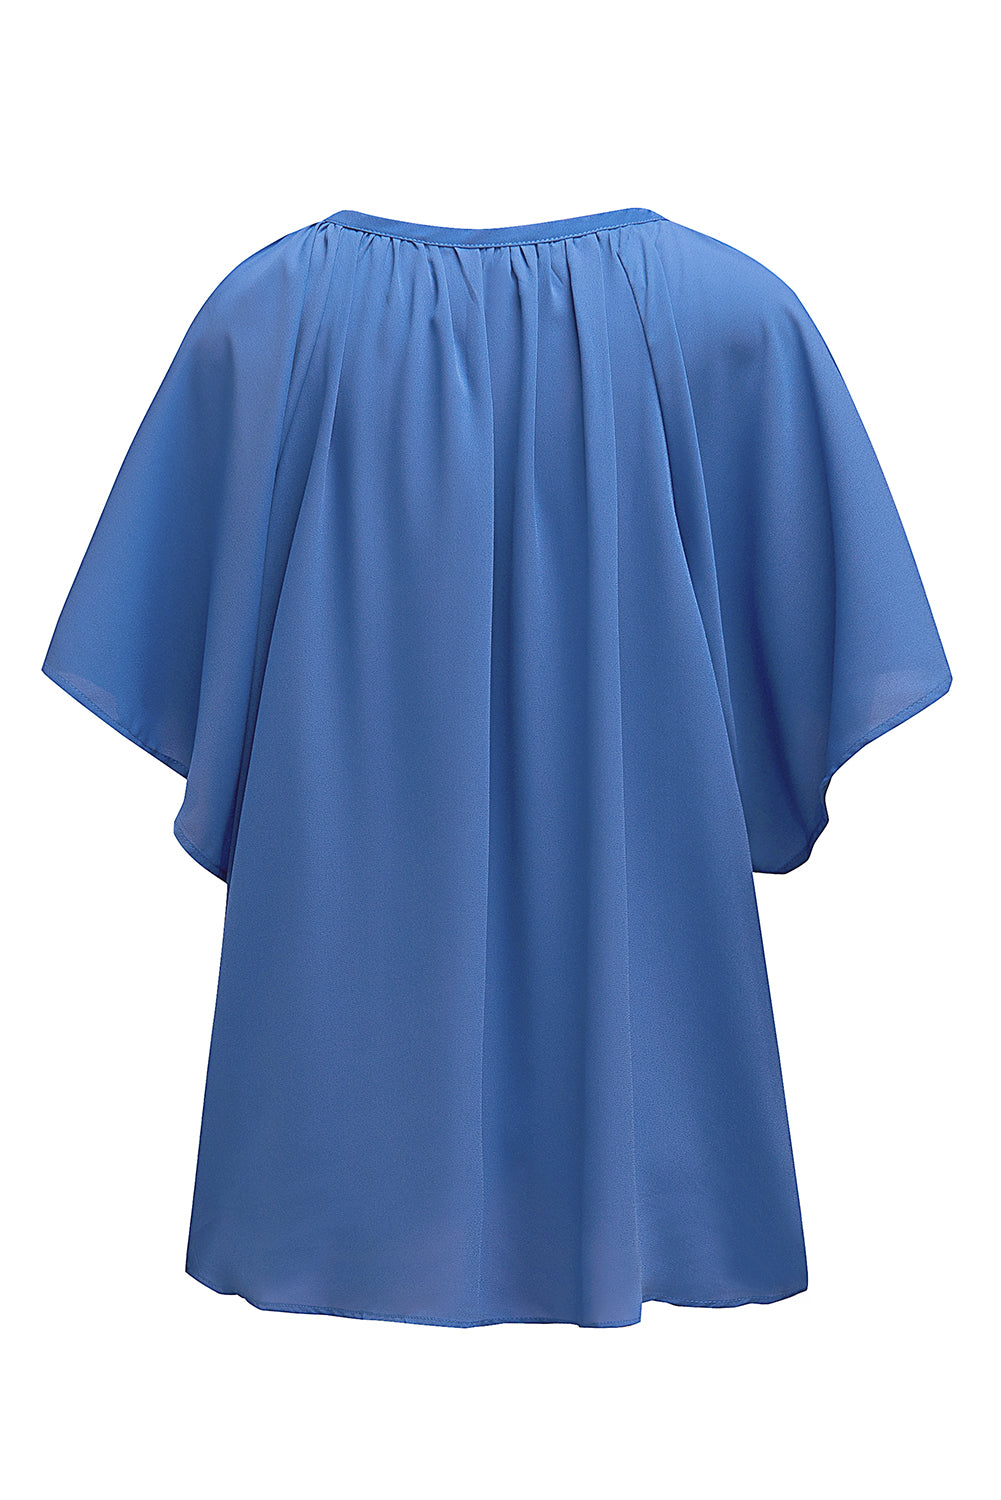 Modra ohlapna nagubana bluza z razcepljenim ovratnikom